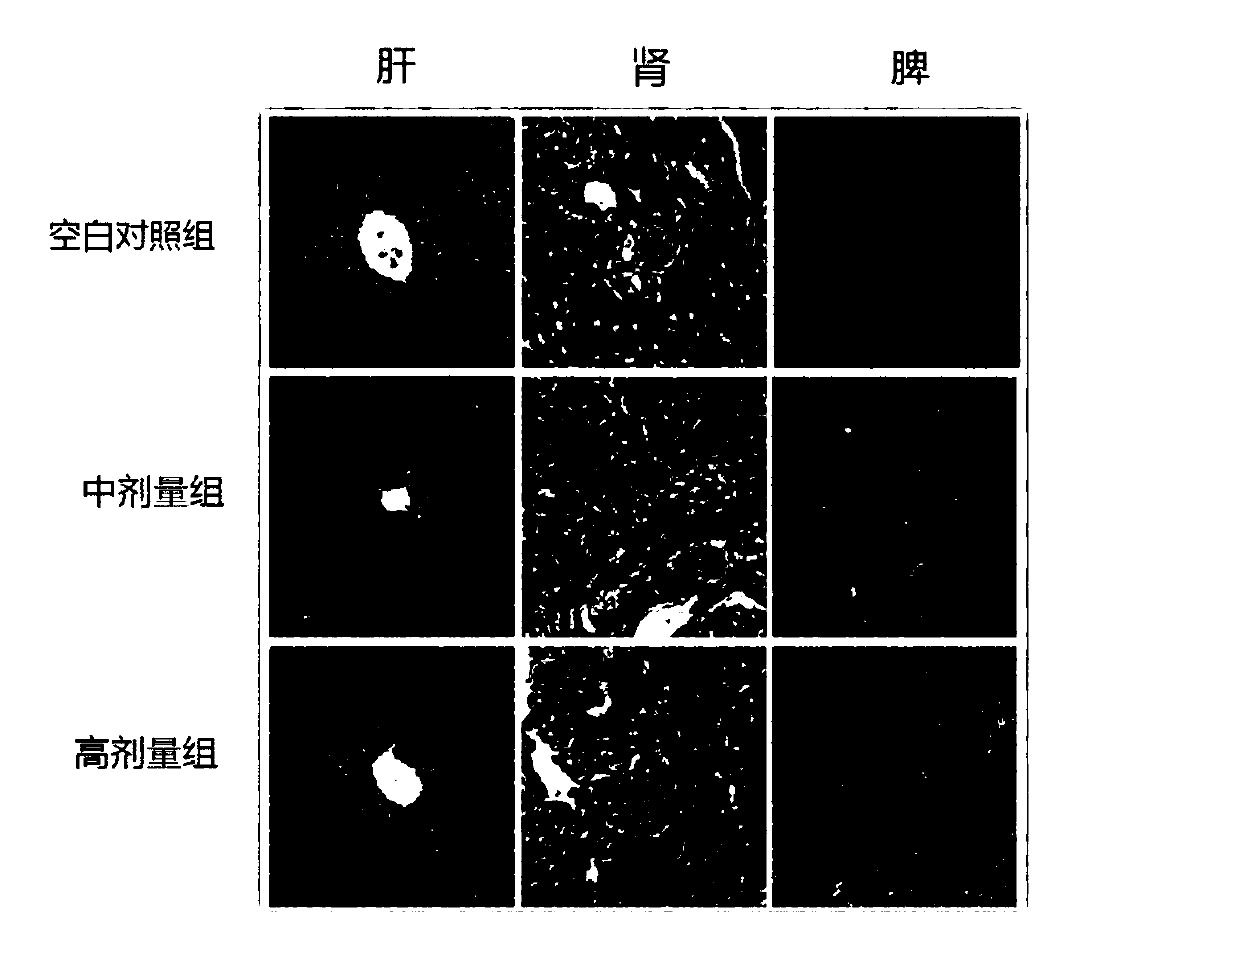 Application of 2,5-furan dimethanol in preparing antitumor drugs